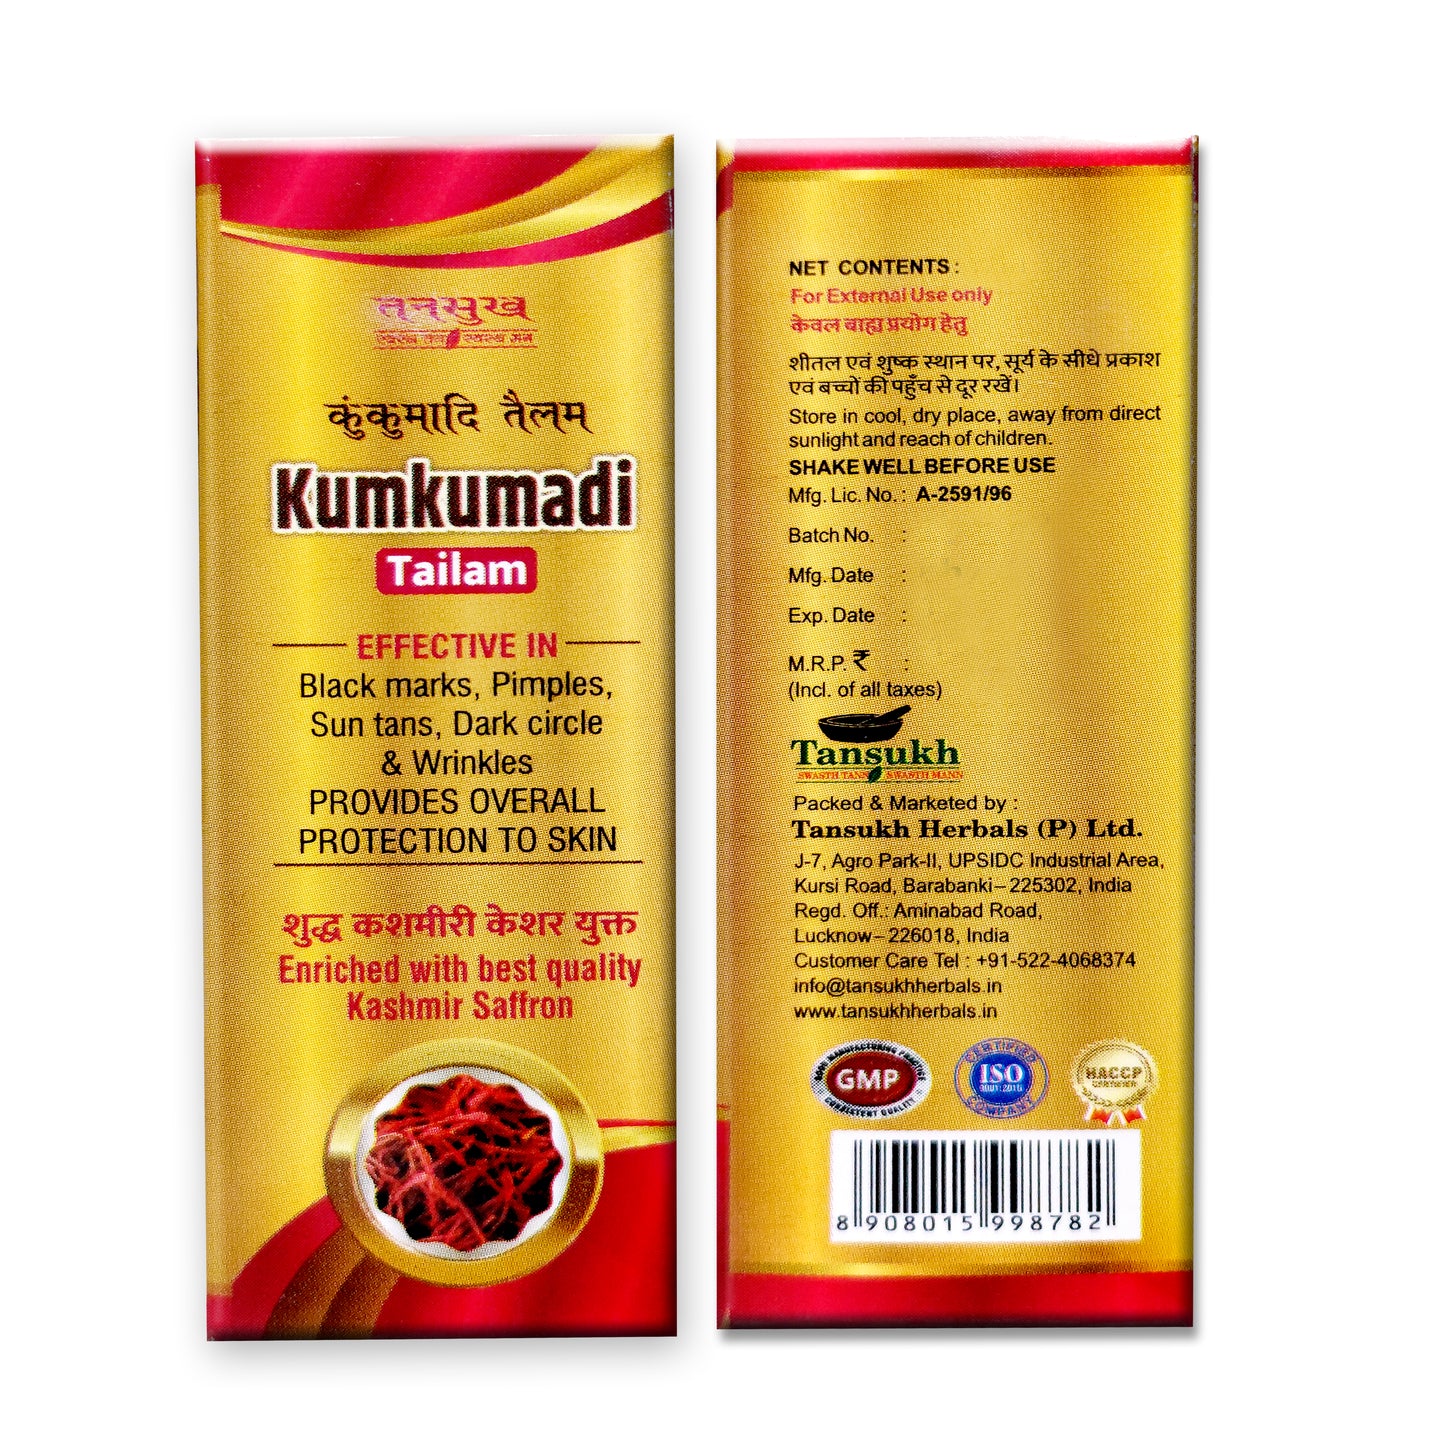 Kumkumadi Tailam (Oil) with Kasmiri Saffron